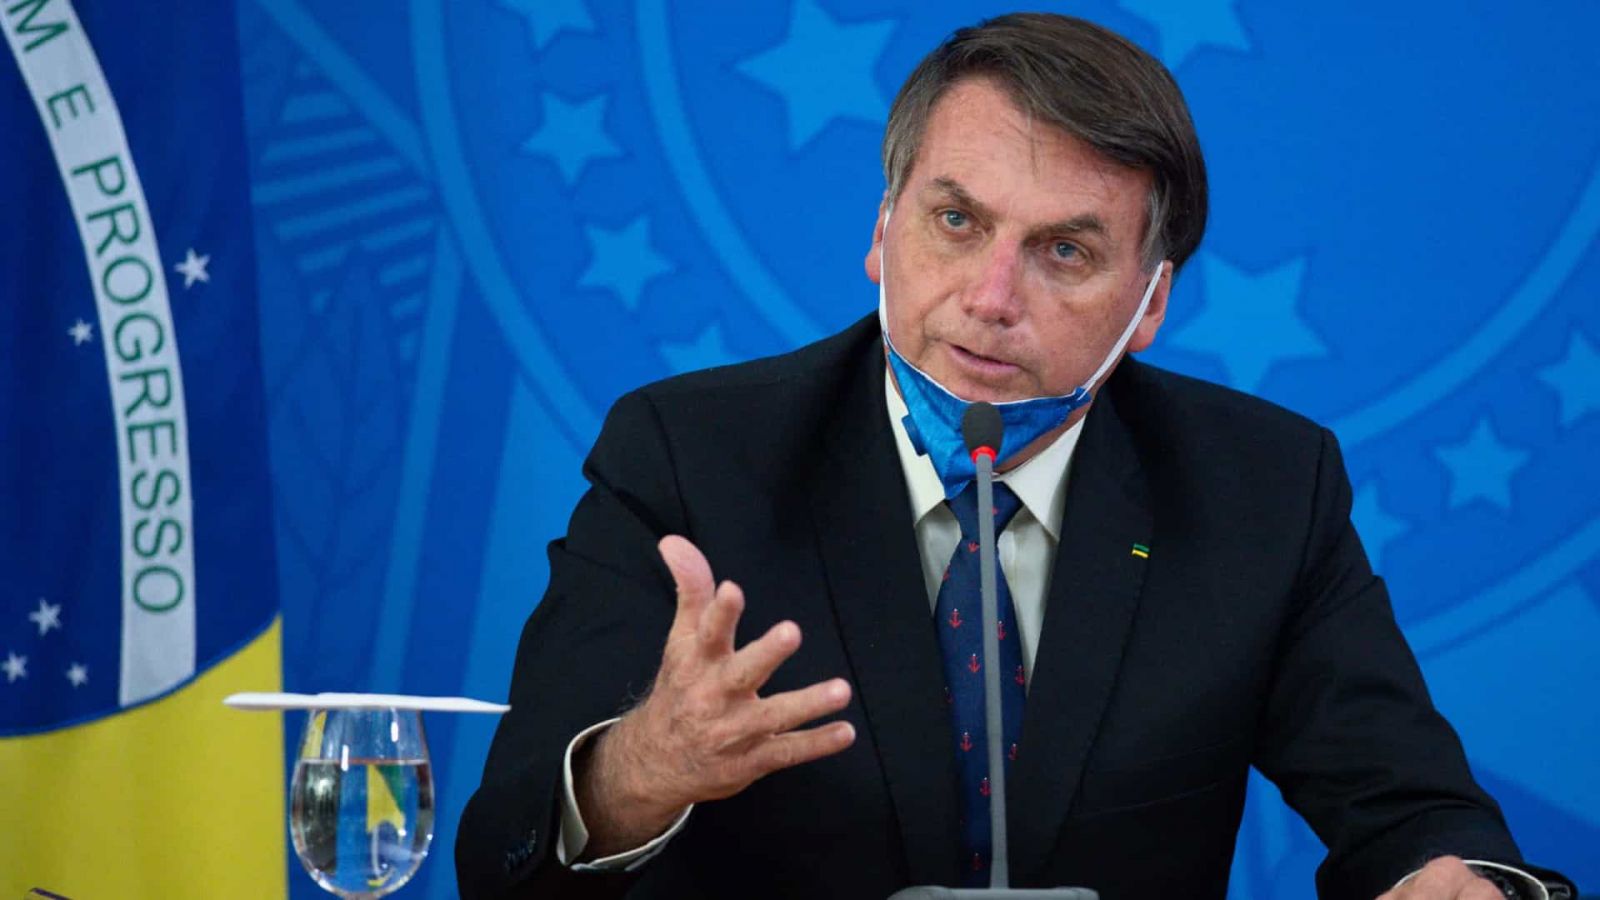 Presidente Bolsonaro antecipa campanha política e compromete a imagem do Exército - Por Julio Cardoso - News Rondônia